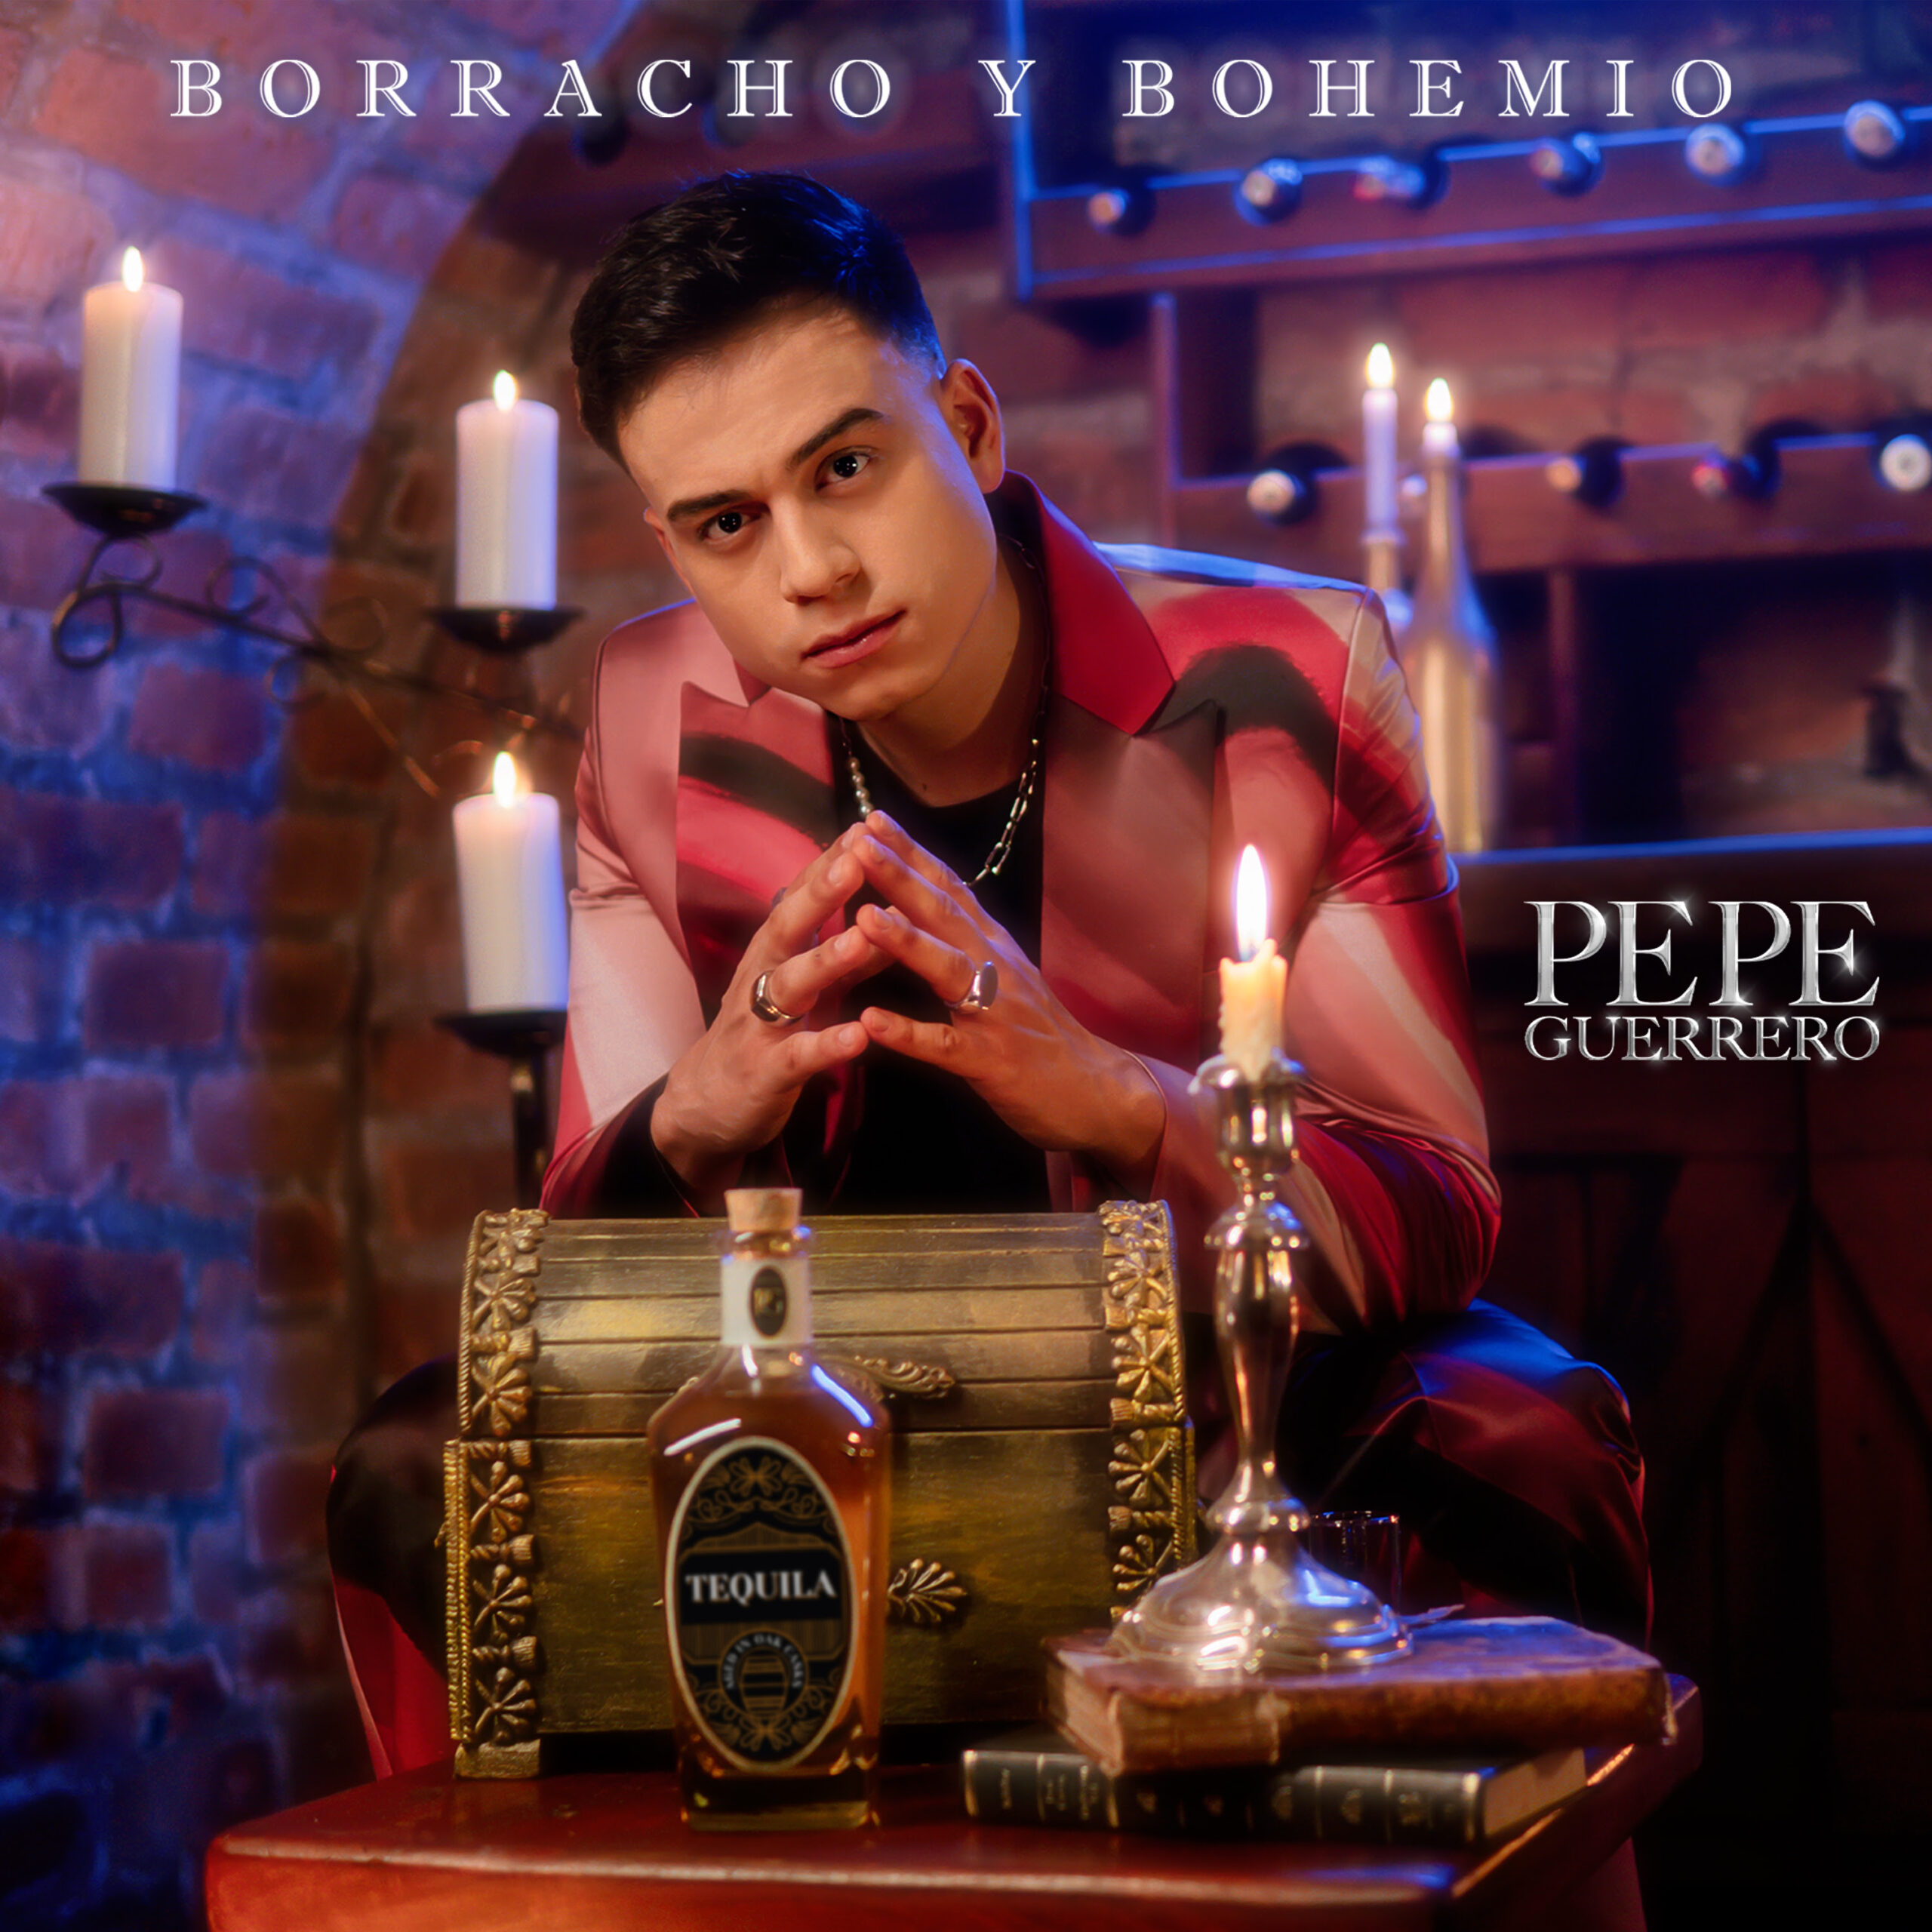 Pepe Guerrero el artista revelación del género popular estrena “Borracho y Bohemio”